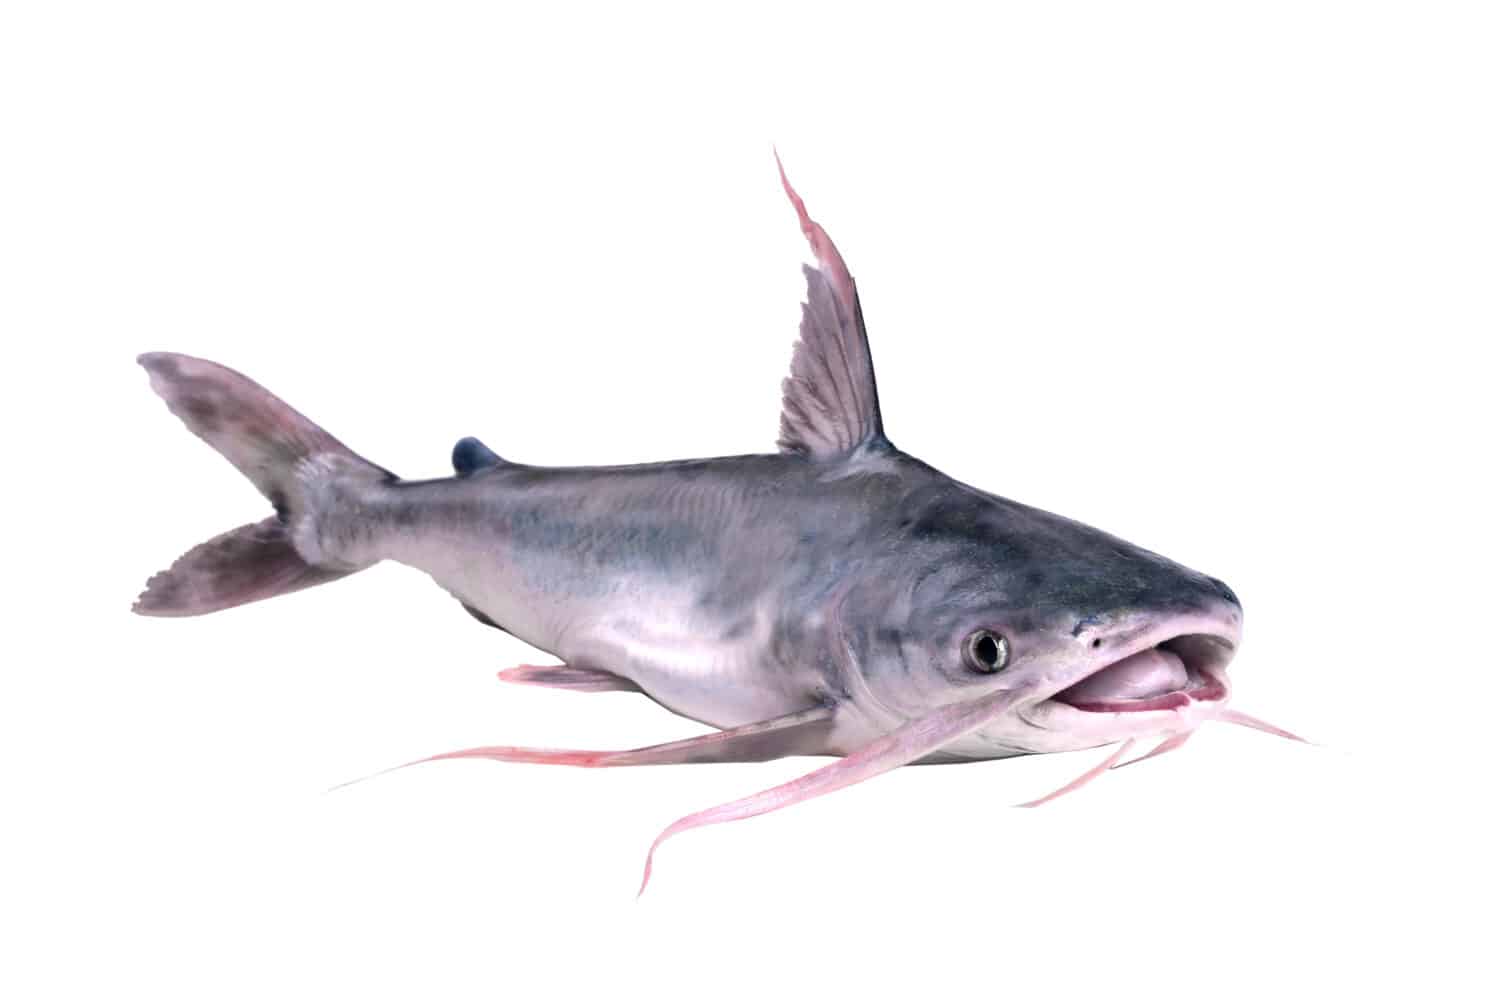 Pesce di mare gafftopsail pesce gatto (Bagre marinus) con la bocca aperta.  Isolato su sfondo bianco.  Isolato su sfondo bianco